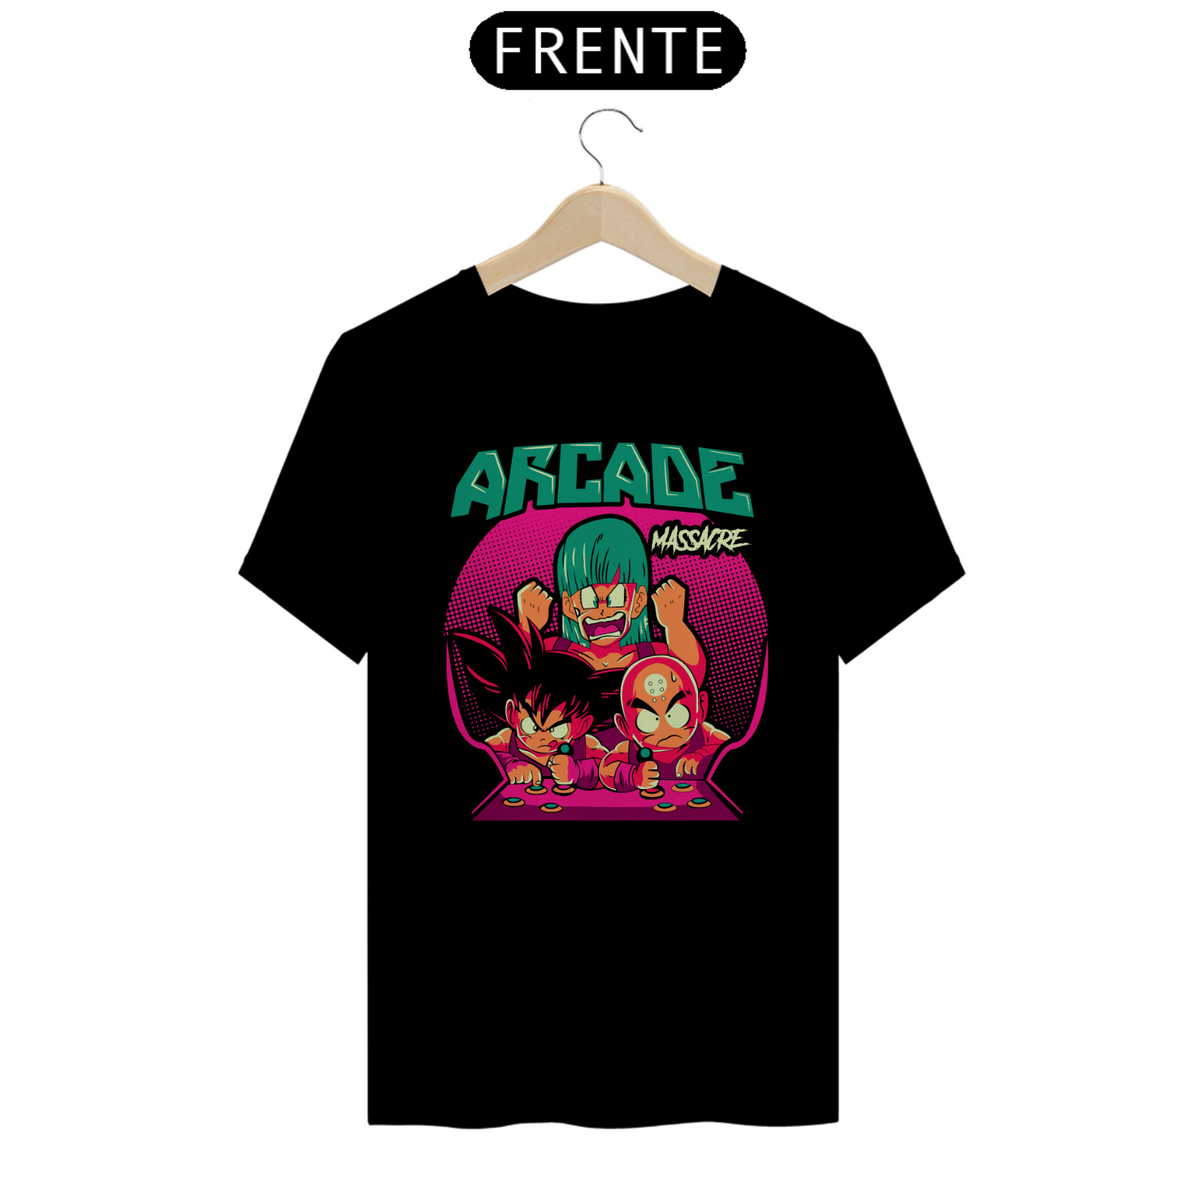 Nome do produto: T-shirt - Arcade Massacre